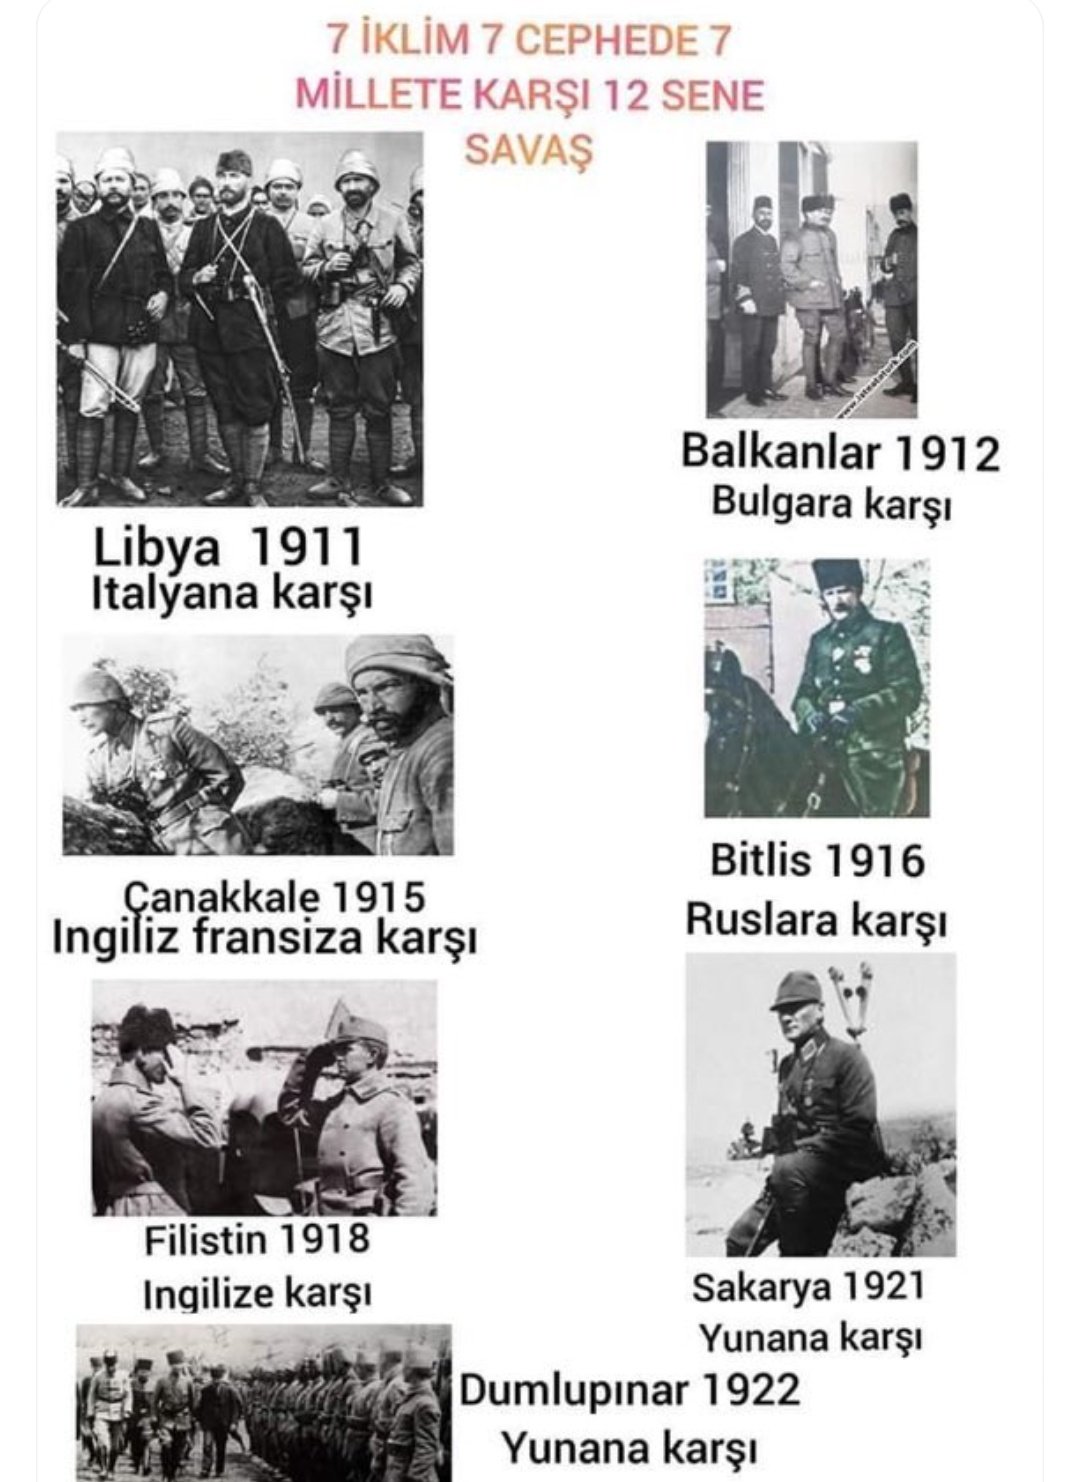 Atatürk'e Düşman Olan Herkes Türk Düşmanıdır